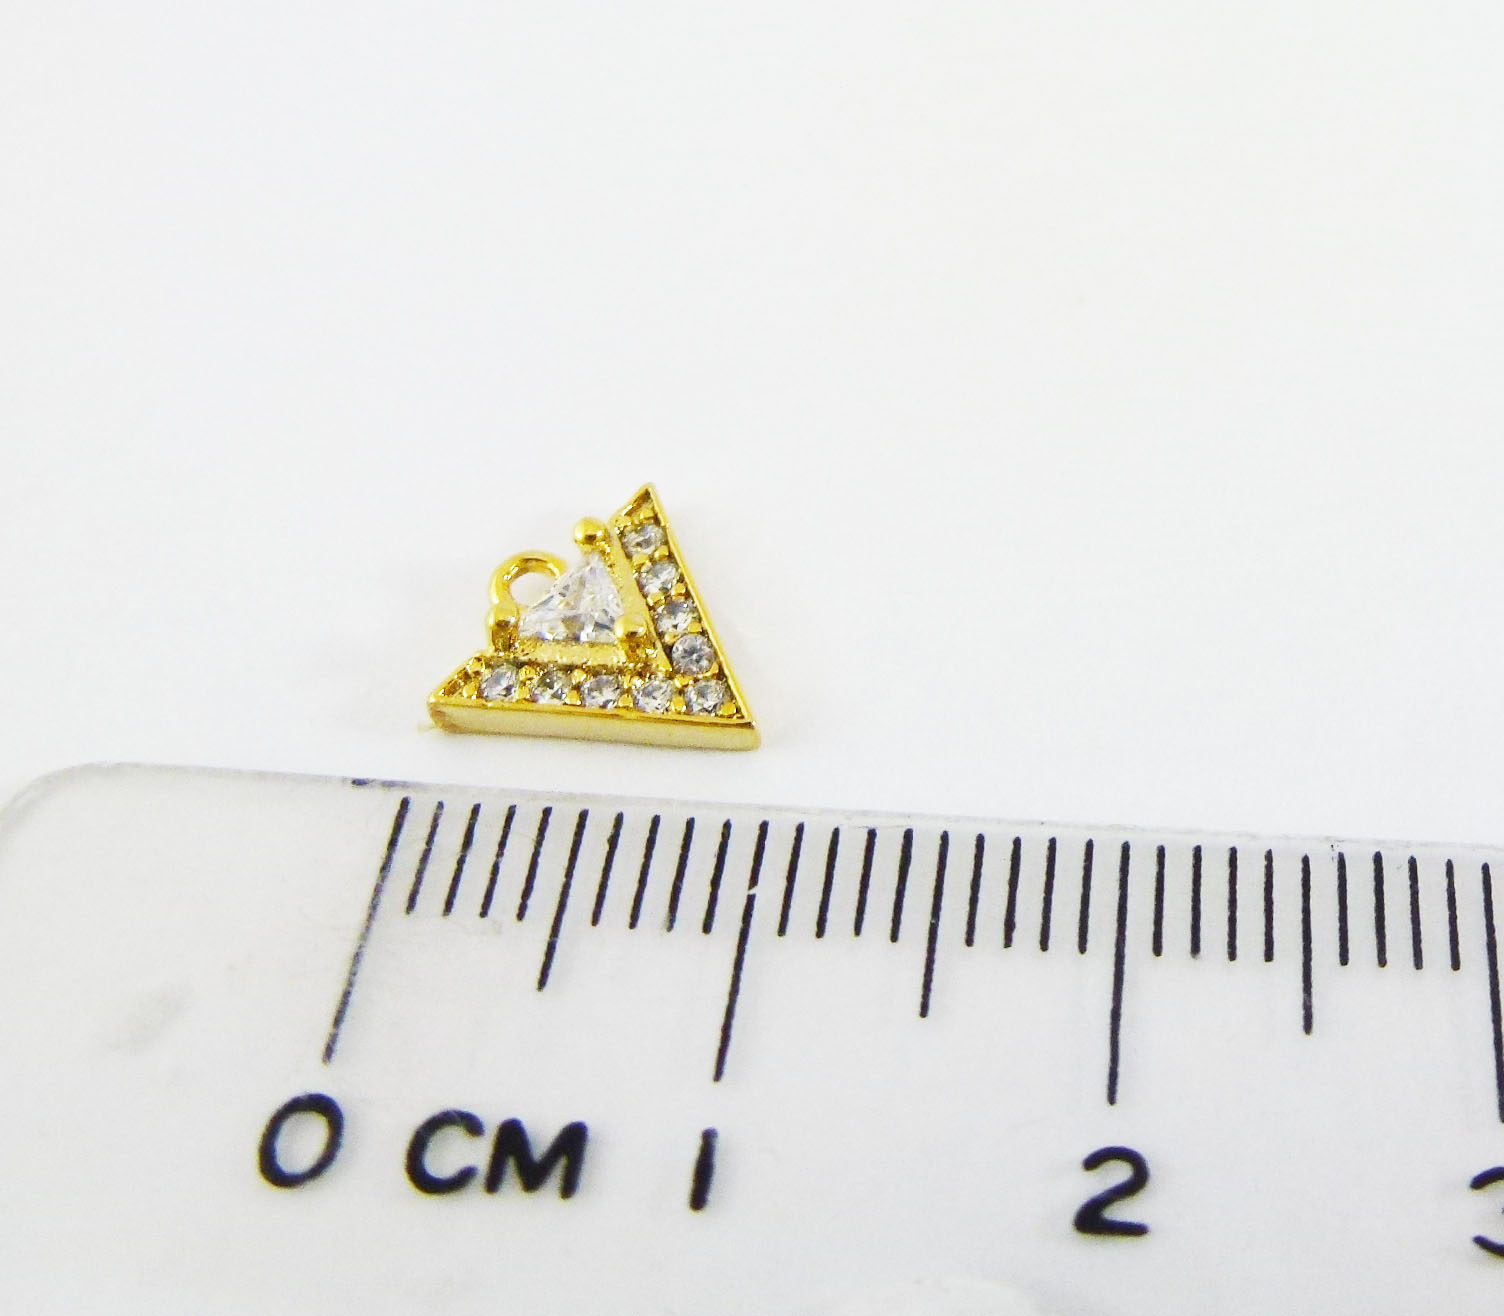 銅鍍金色單孔鑲鑽三角形-10MM